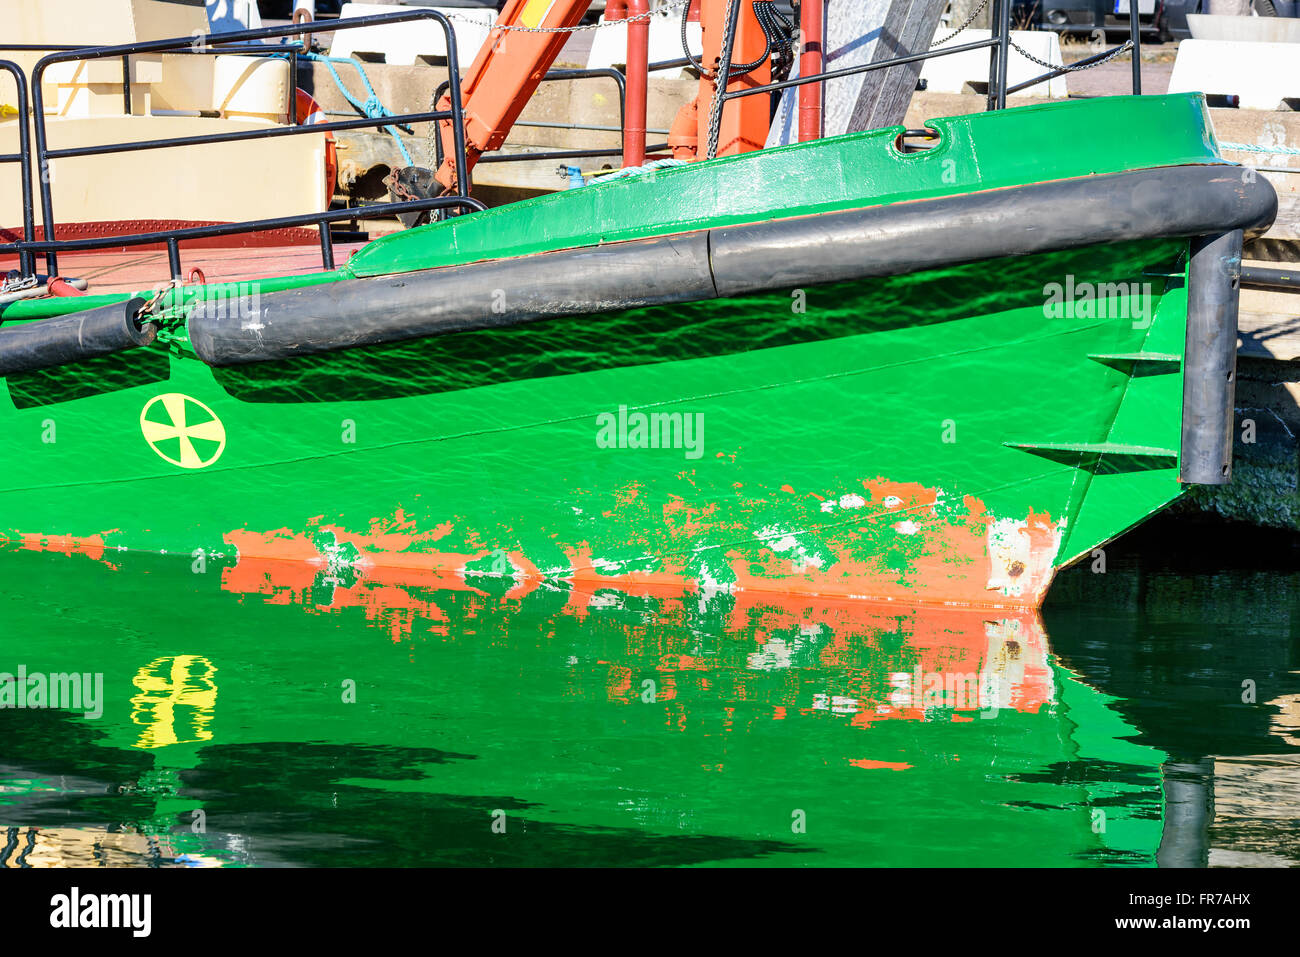 Eine grüne Boot Kiel mit schwarzem Gummipuffer in reflektierenden Wasser. Stockfoto